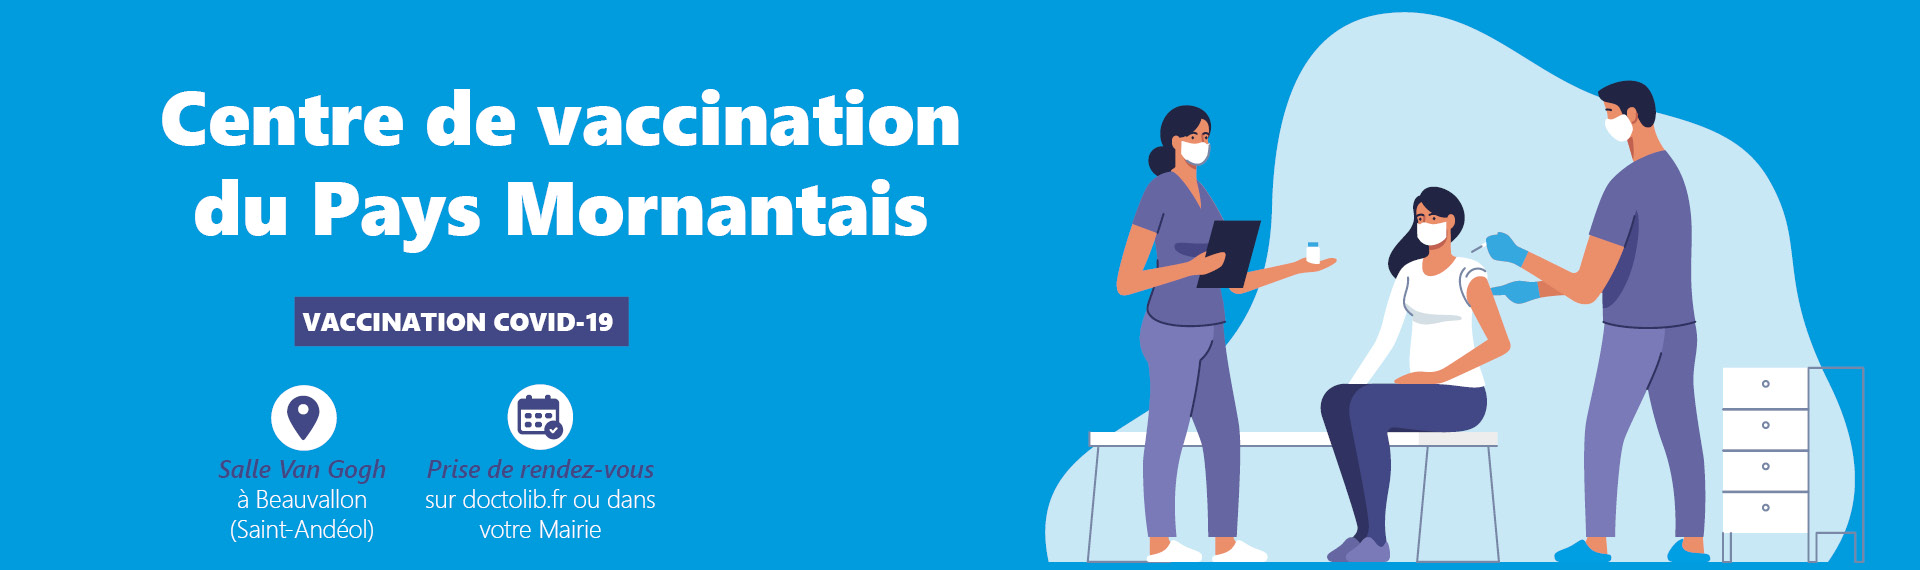 bandeau site internet dmnagement vaccination